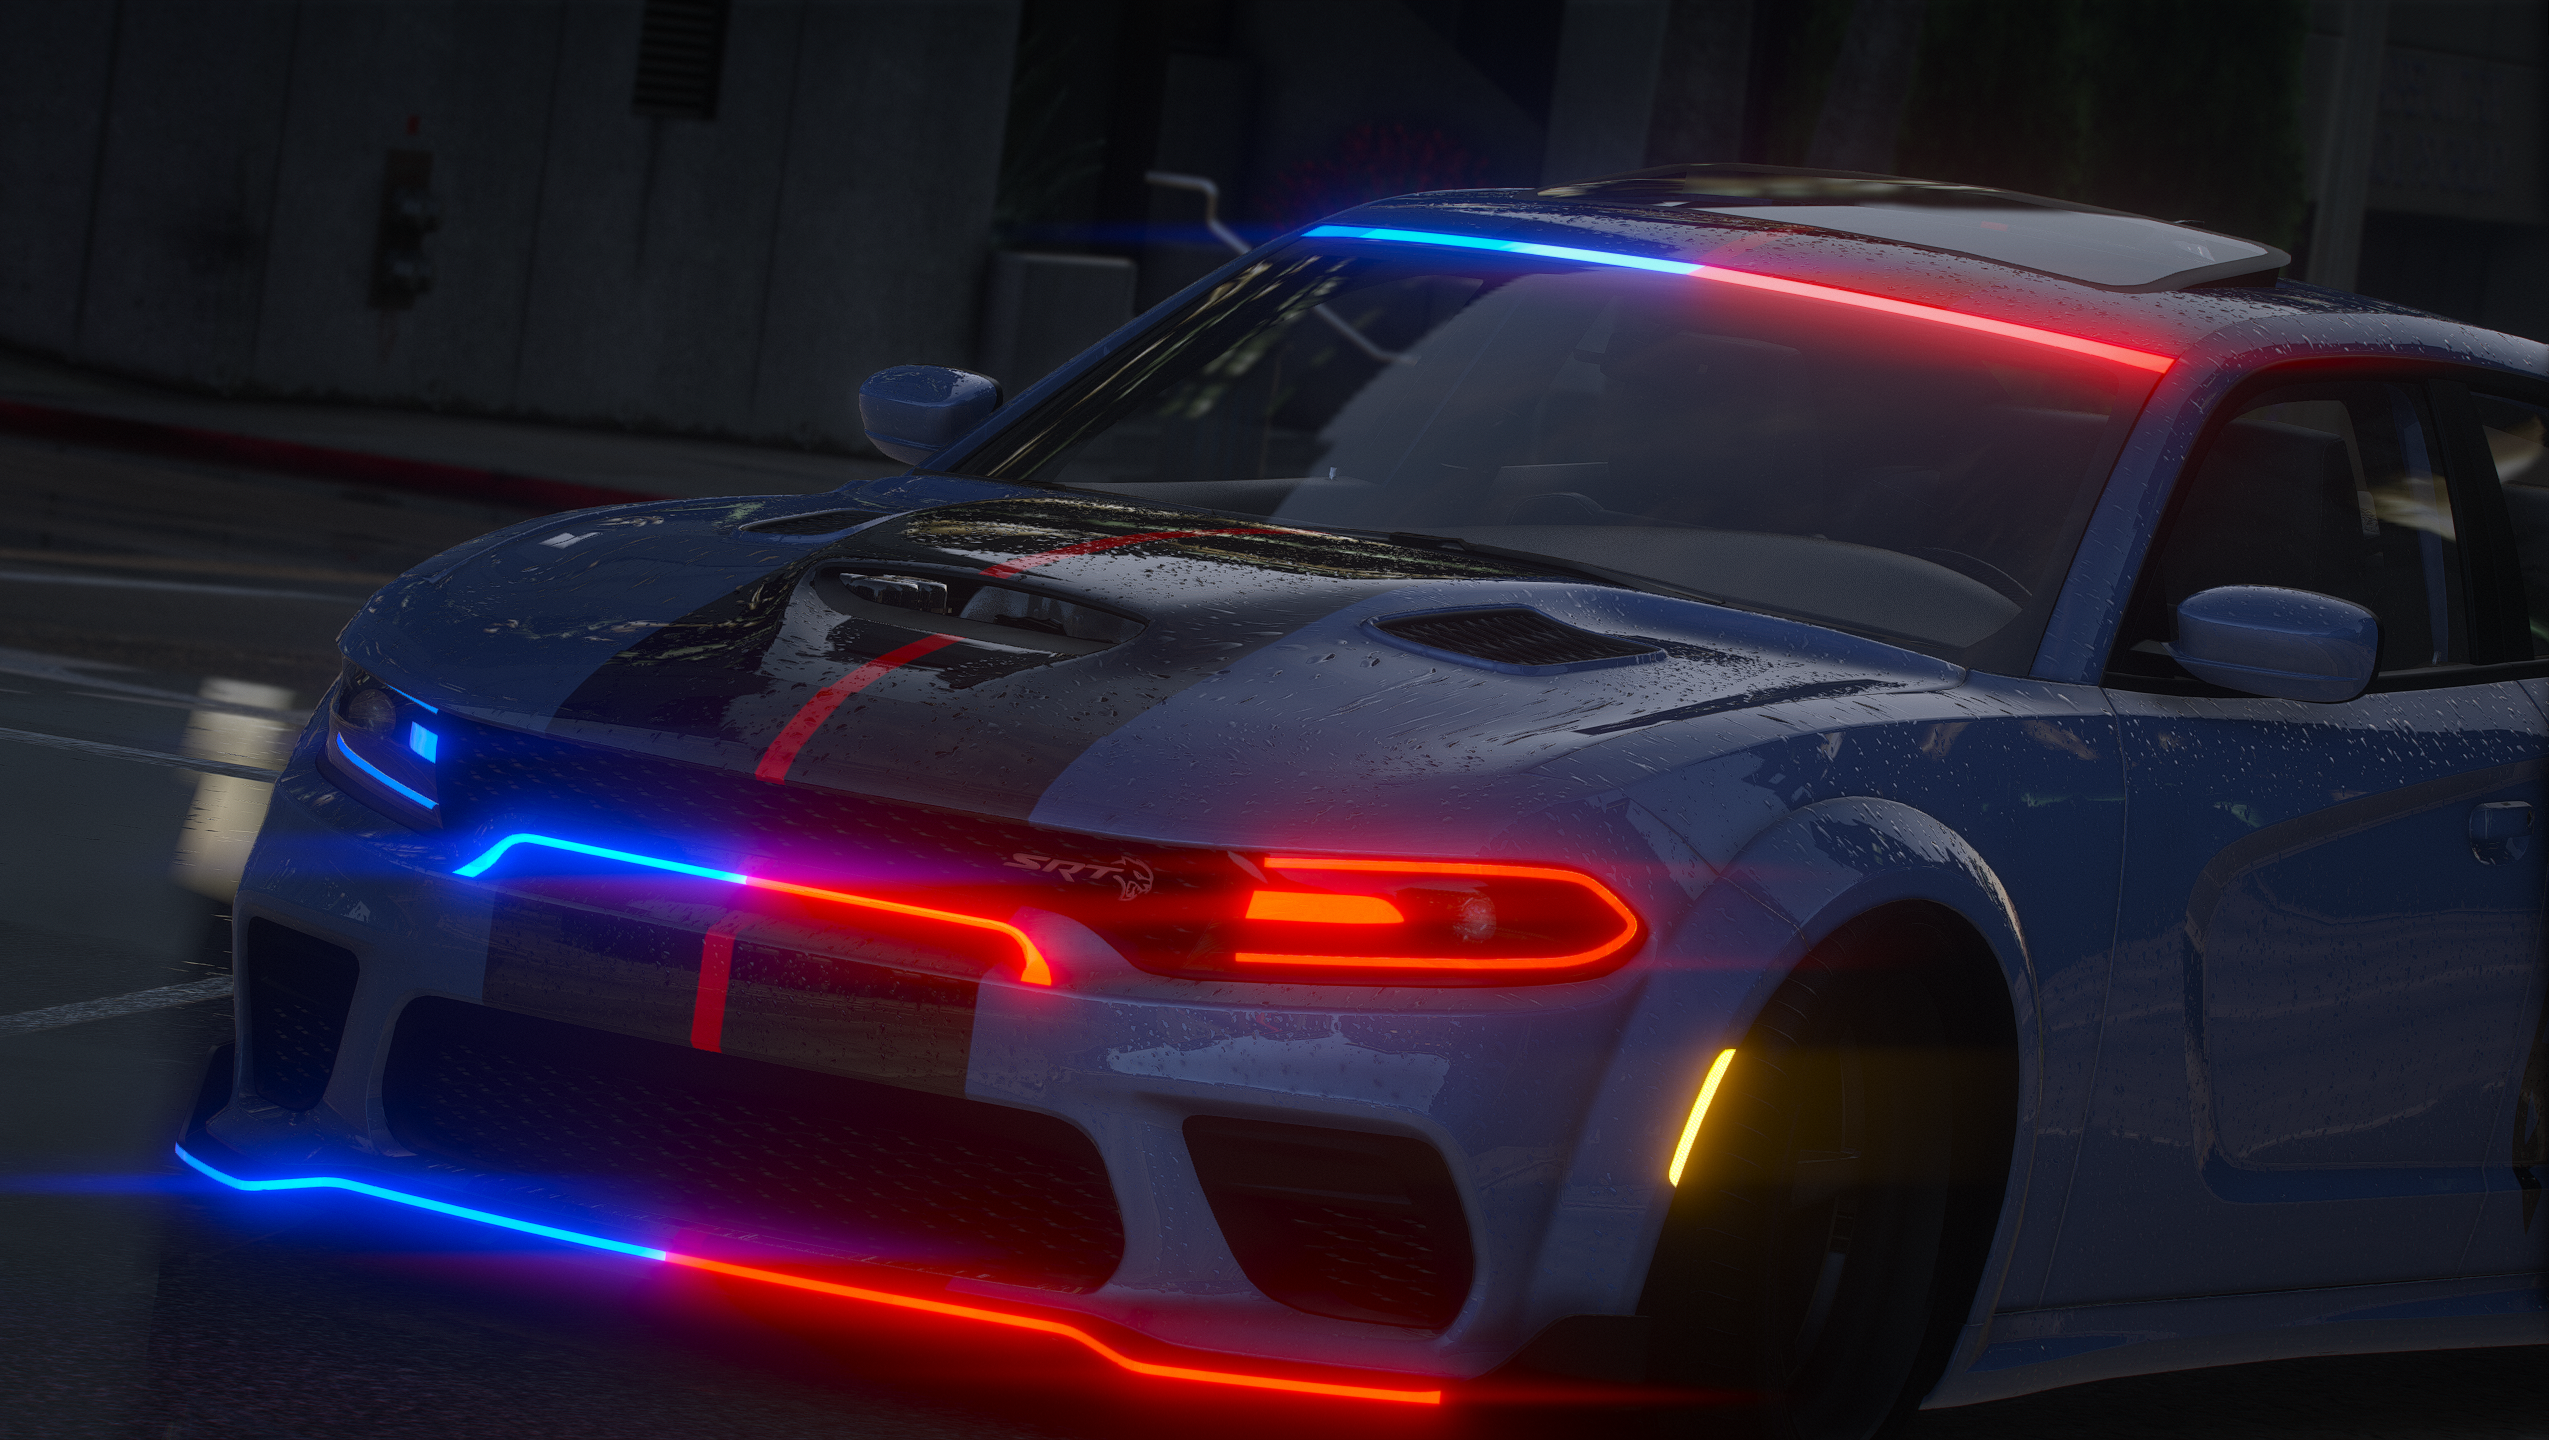 2022 Dodge Charger Hellcat Jailbreak FiveM Police Vehicle